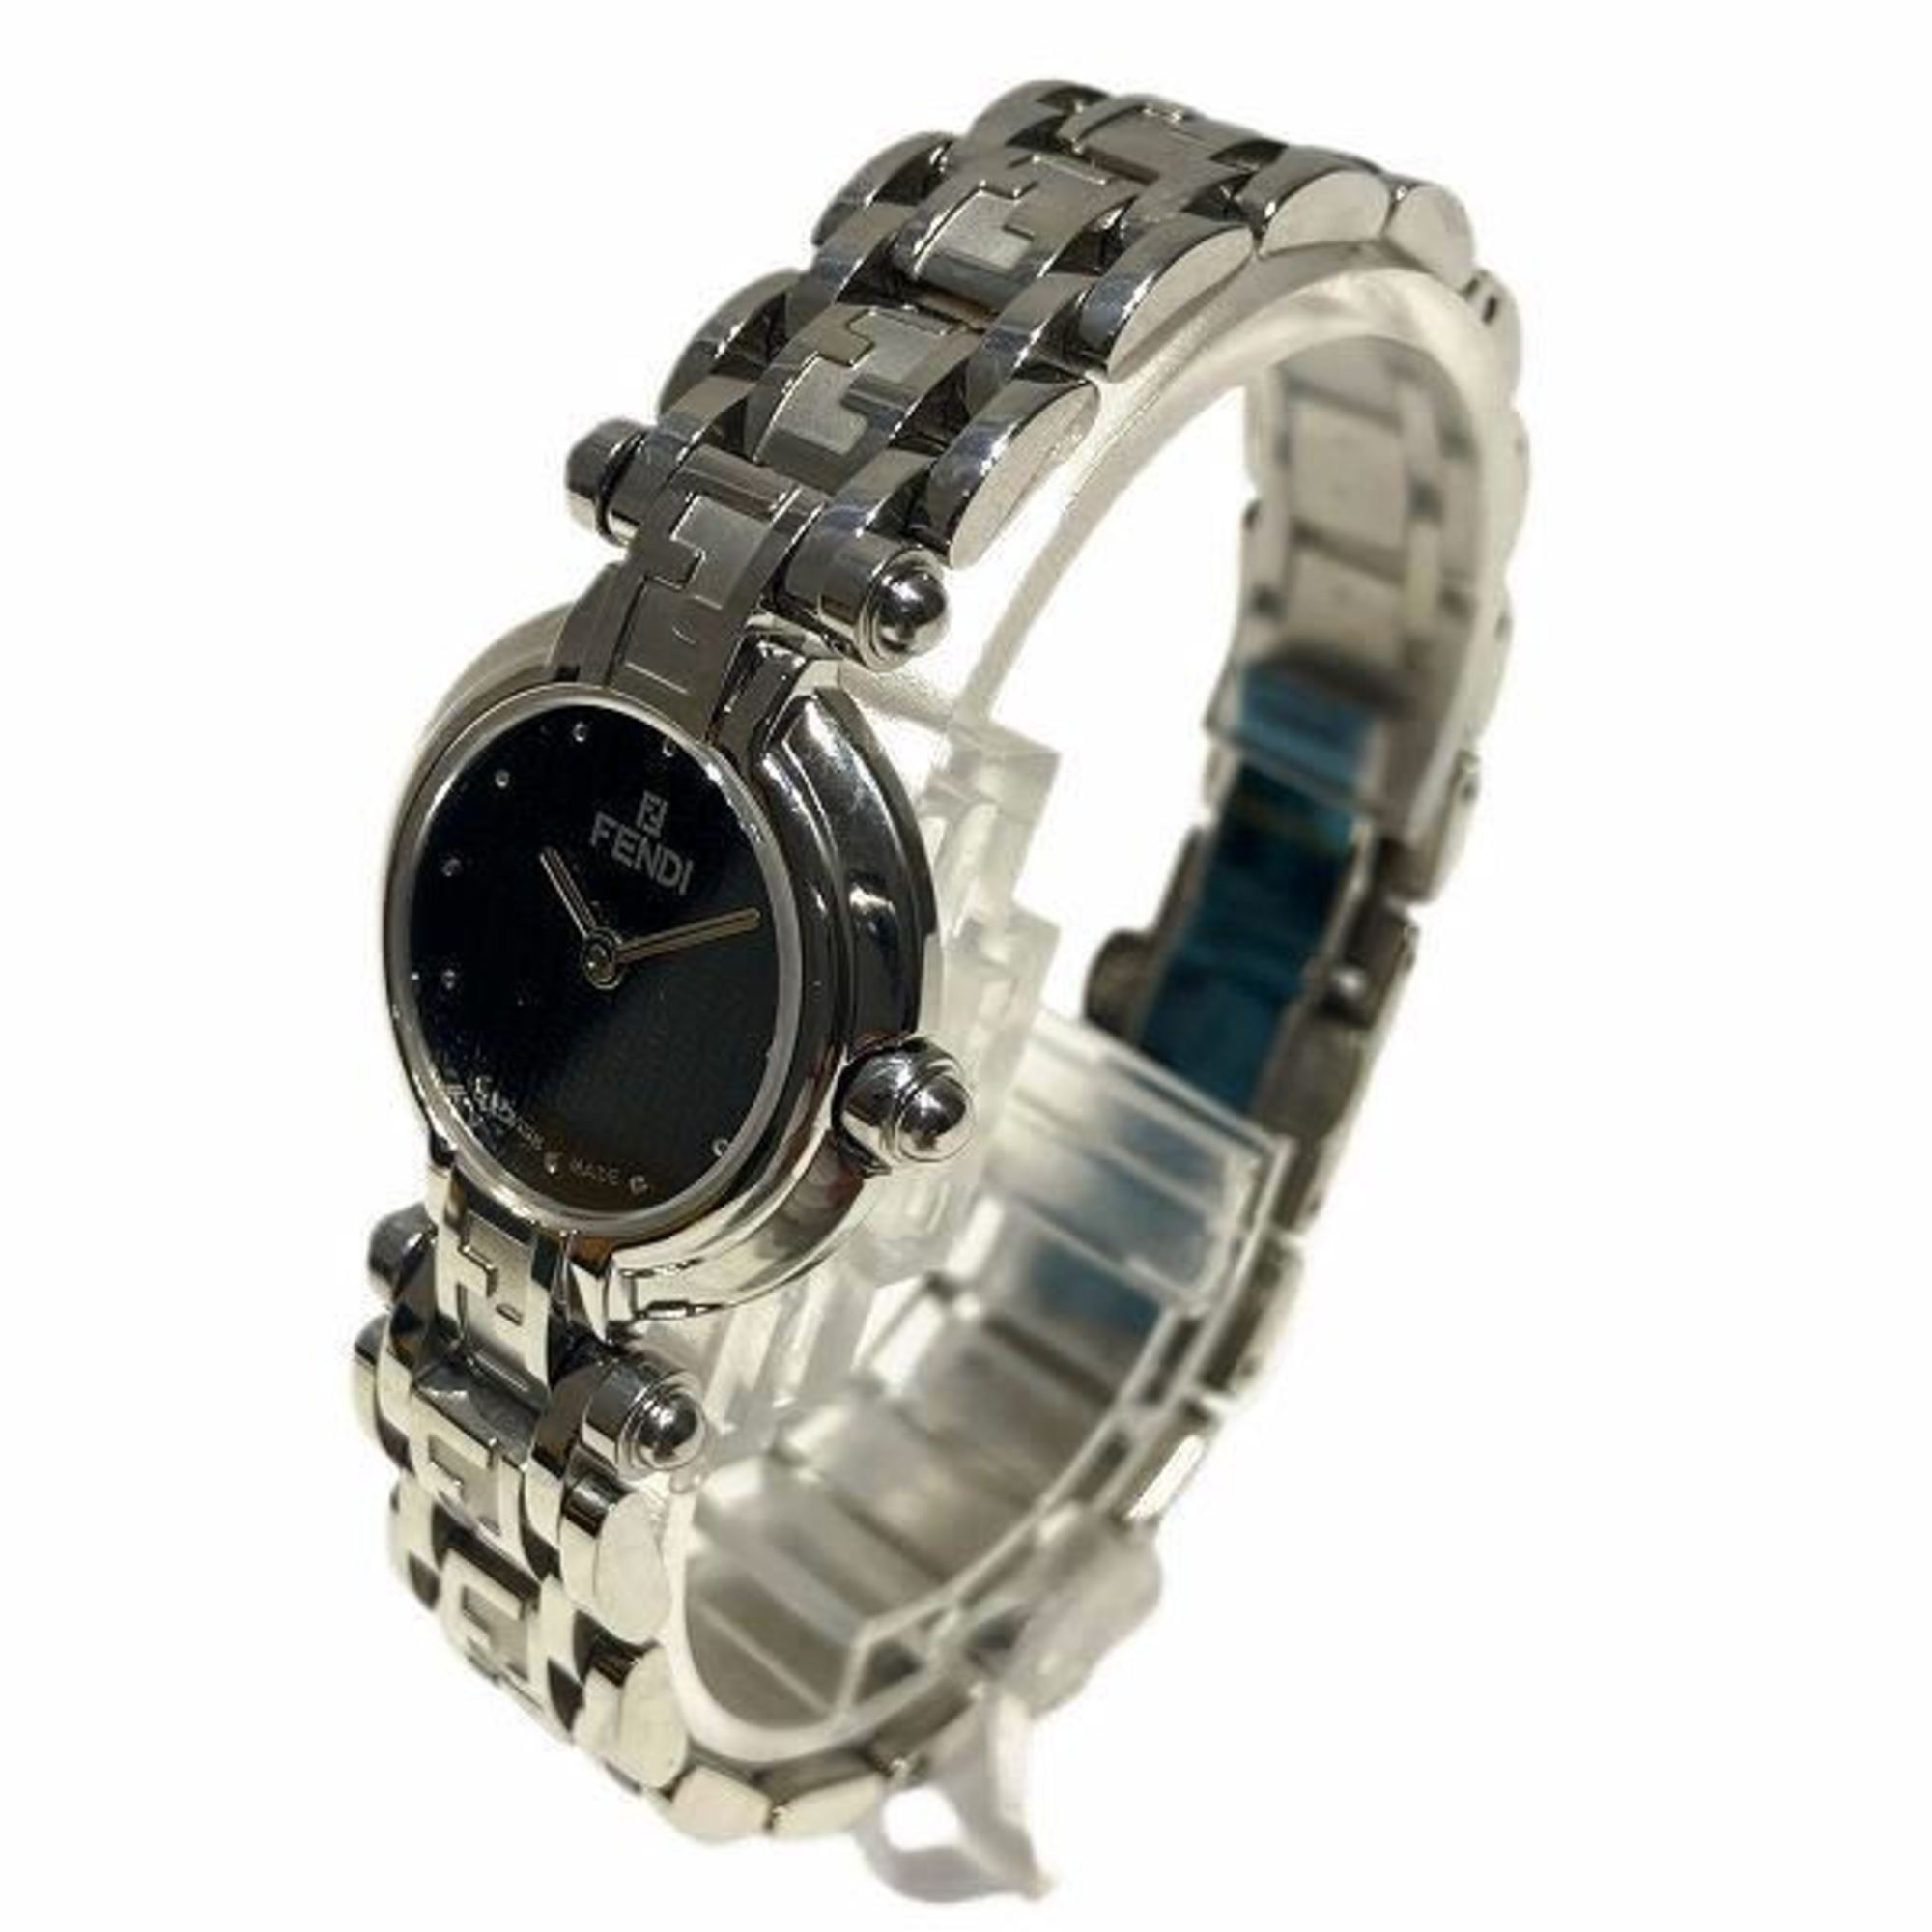 FENDI 750L quartz watch ladies